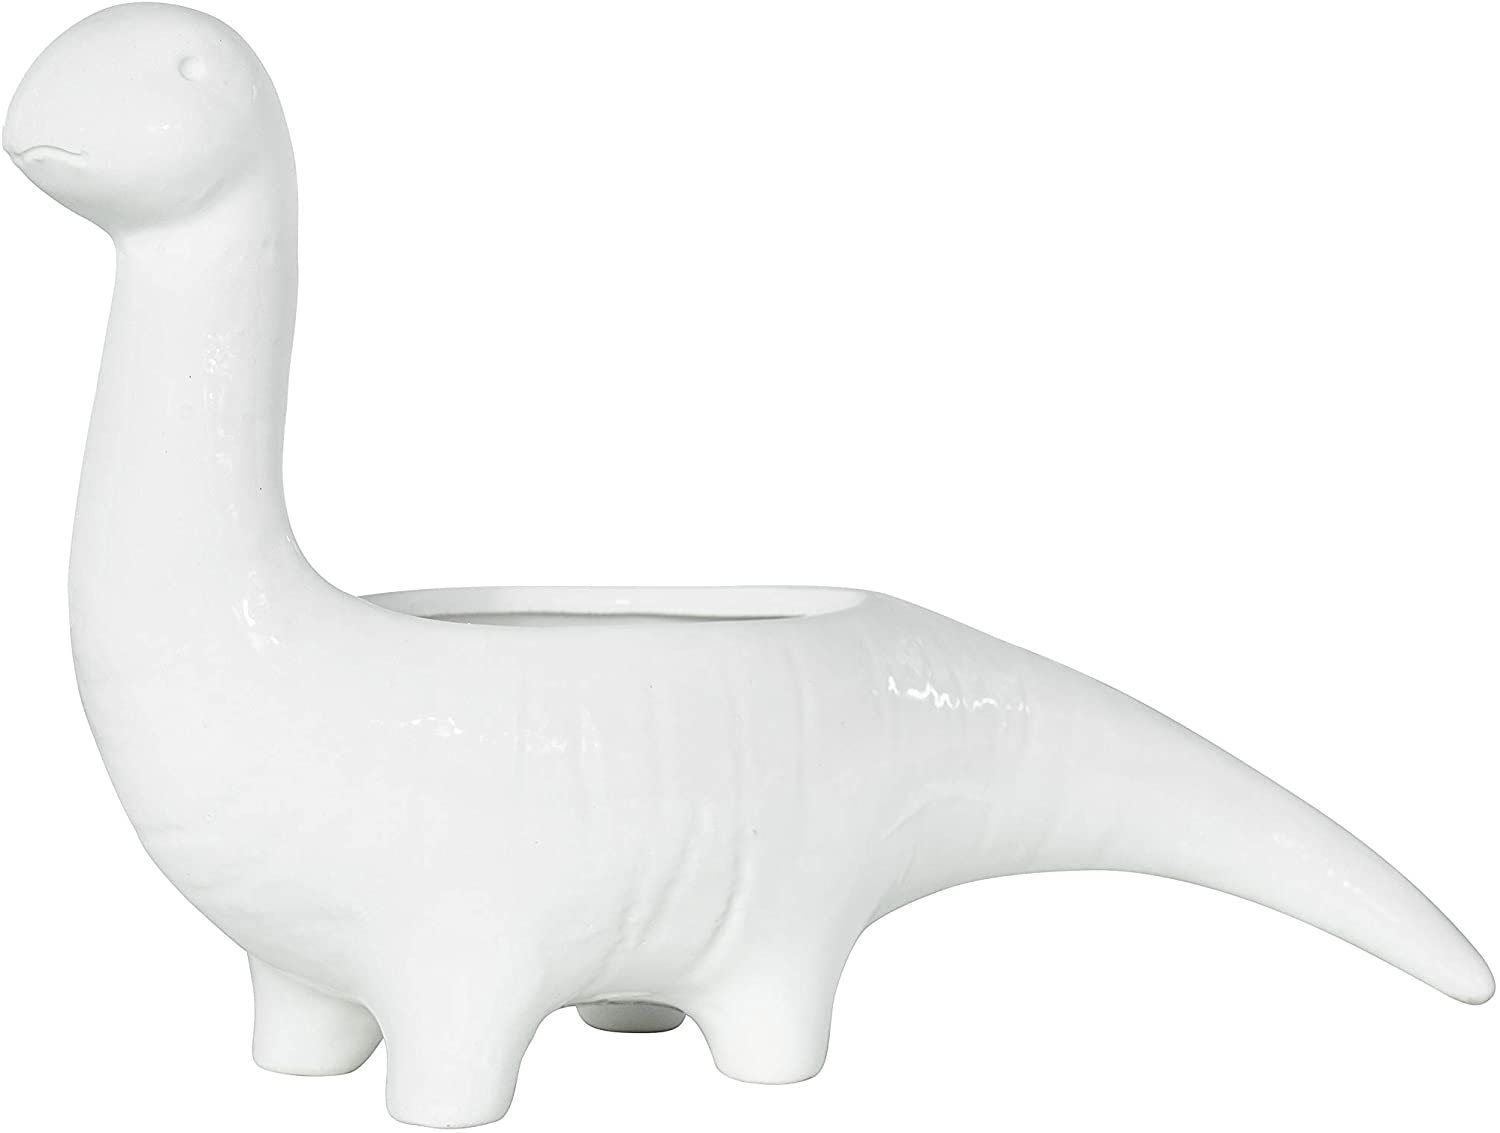 White Dinosaur Shaped Stoneware Planter - Image 1